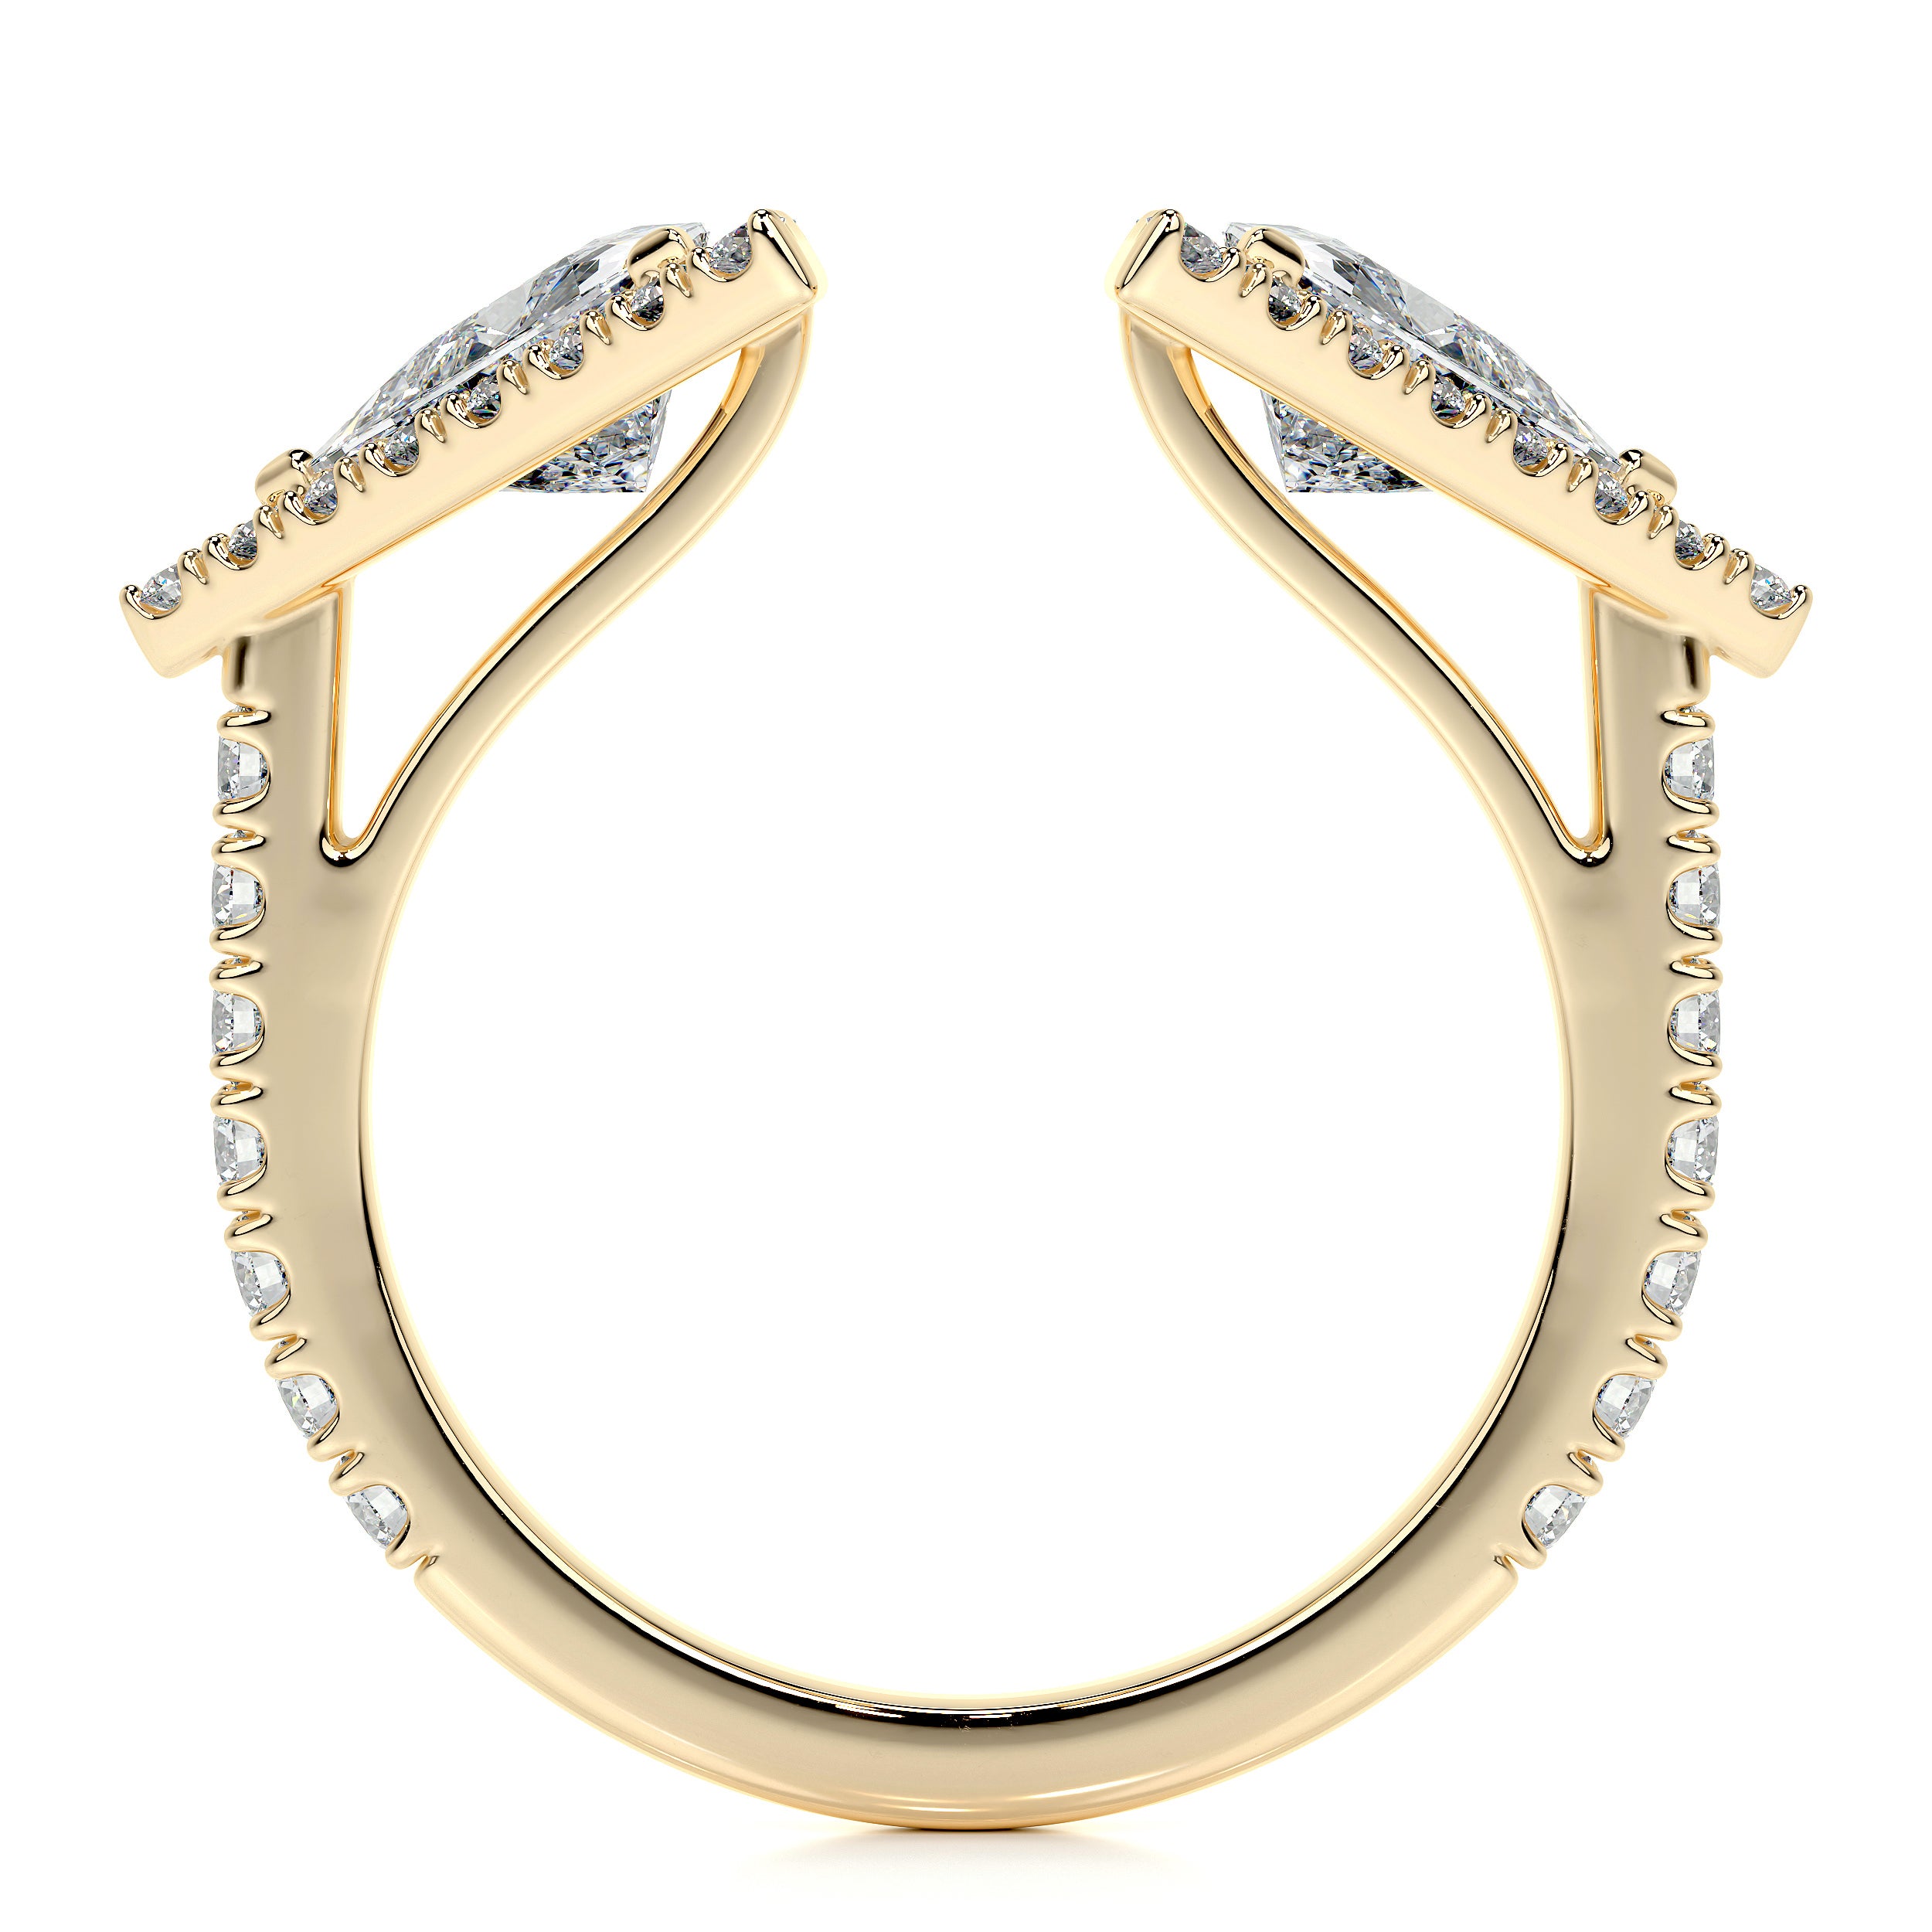 Jade Lab Grown Diamond Wedding Ring   (1.5 carat) -18K Yellow Gold